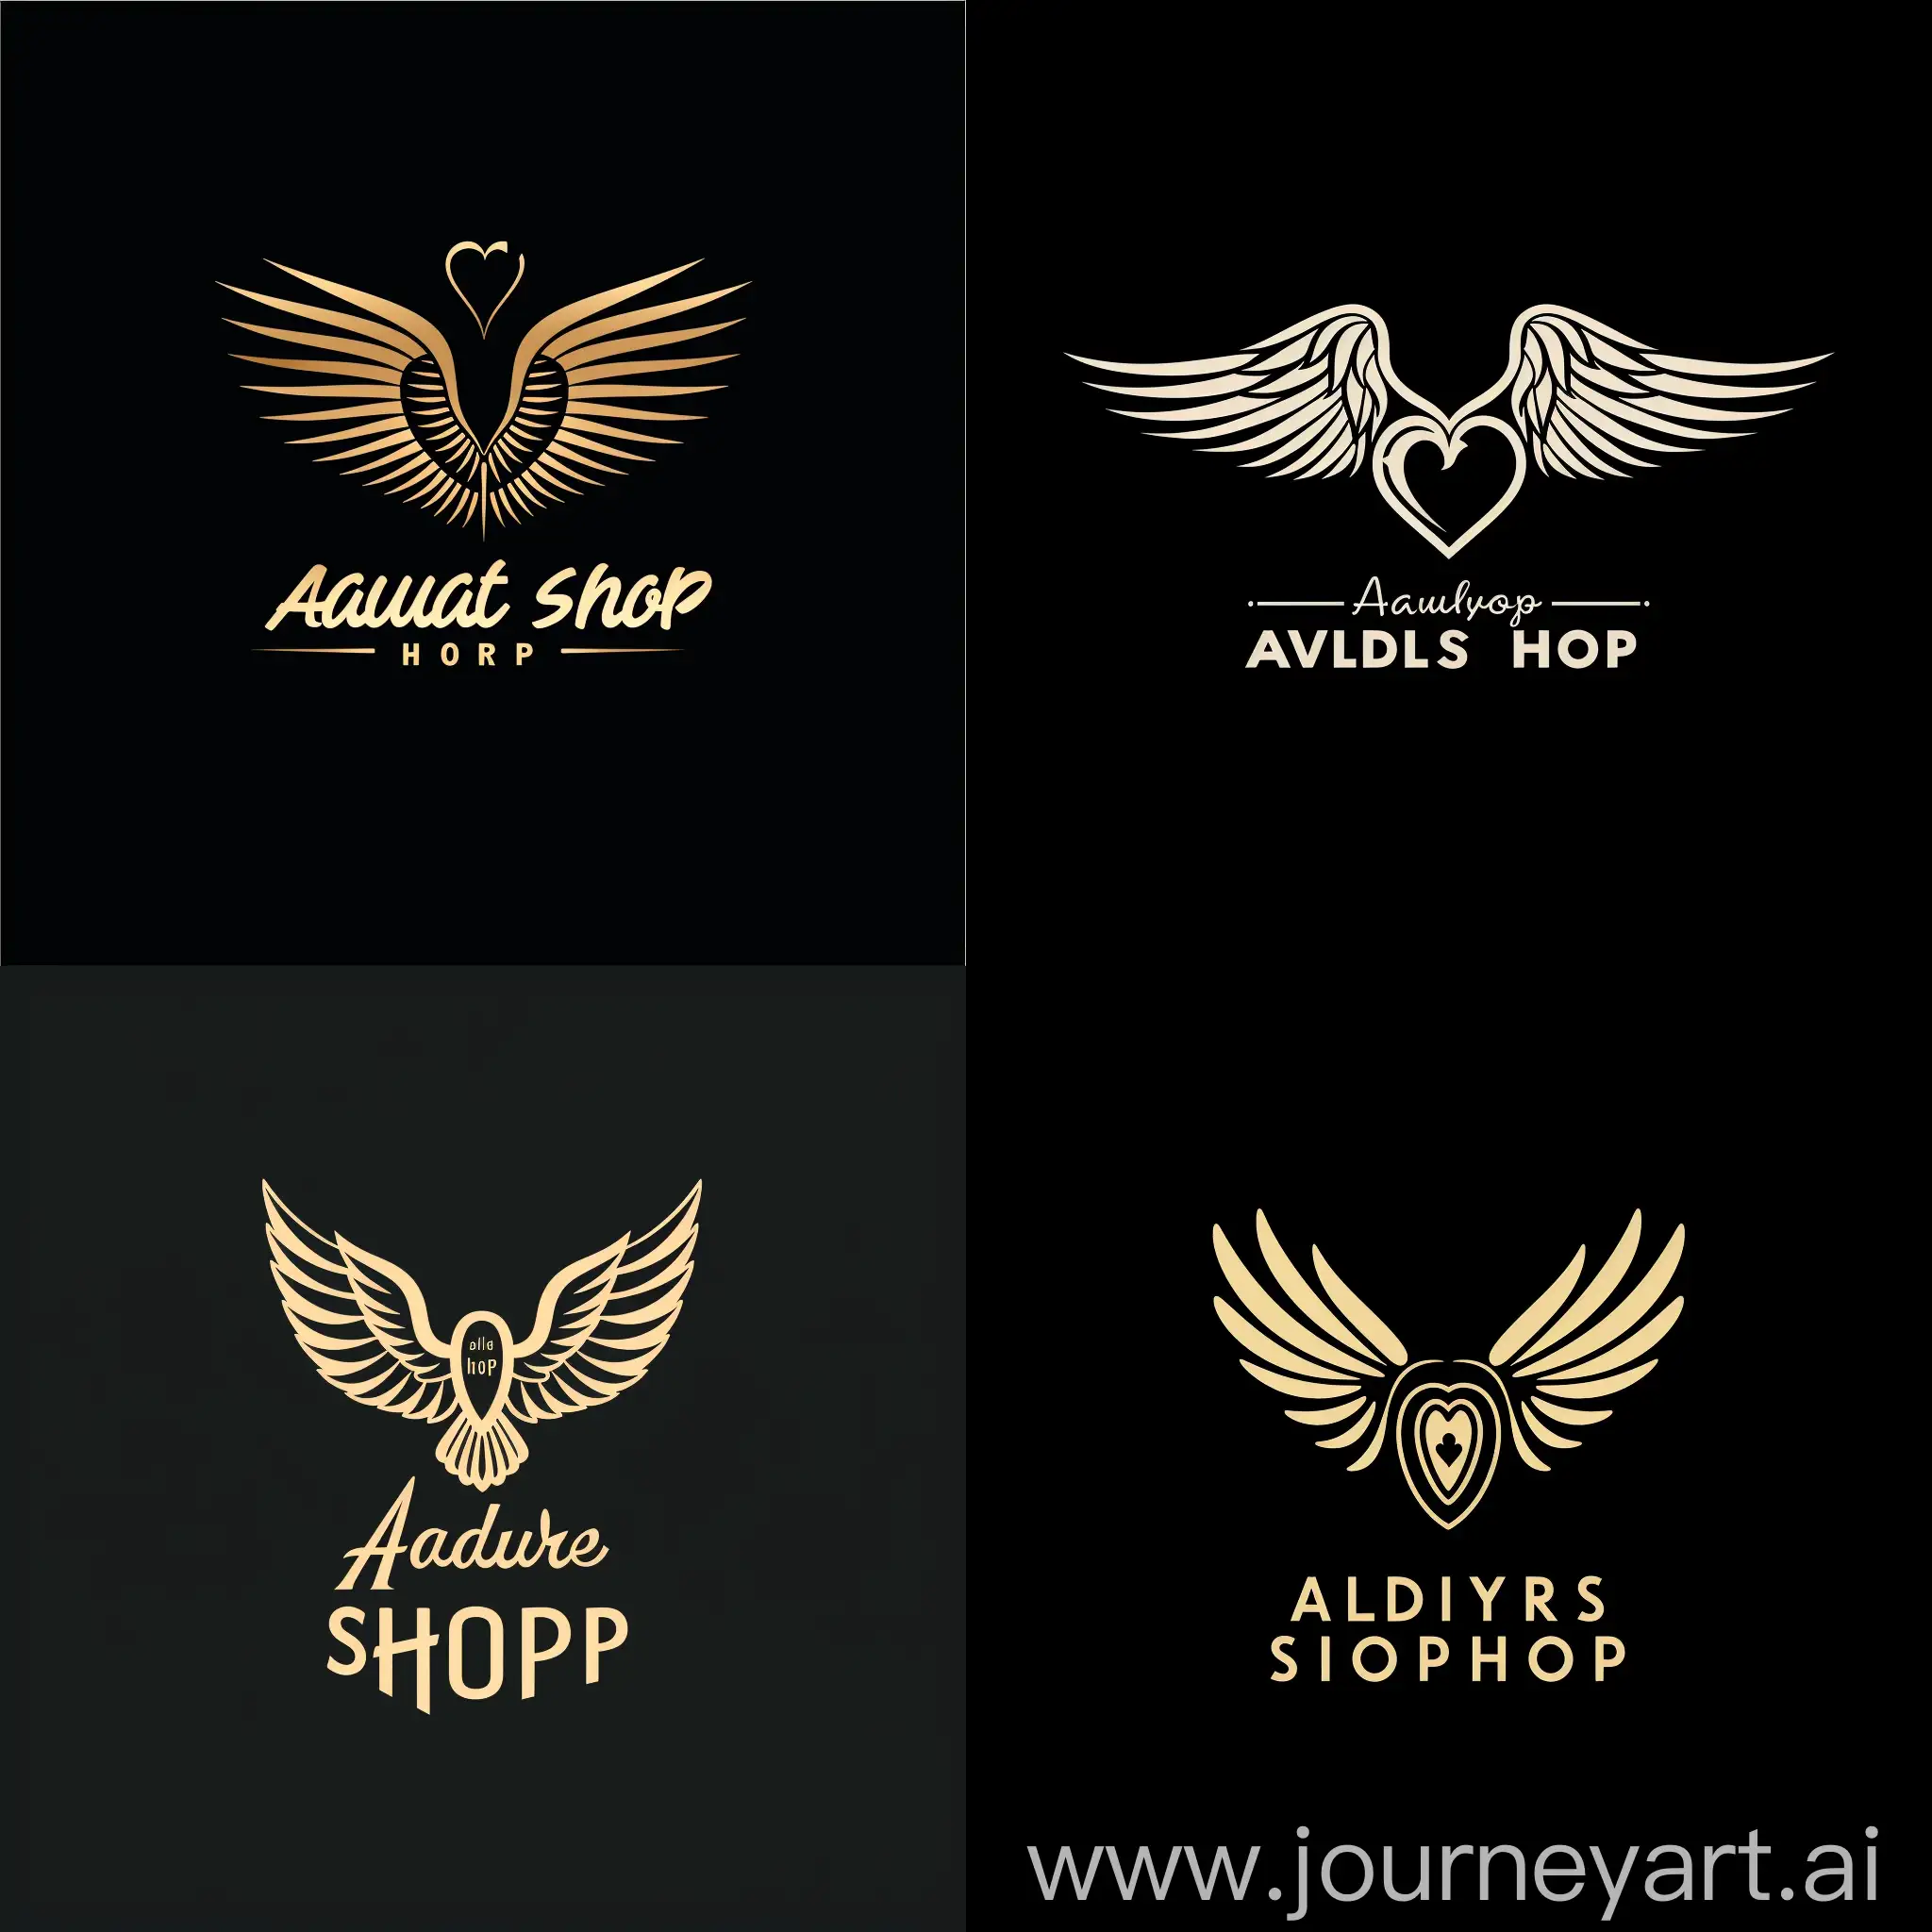 минималистичный логотип без букв для интернет магазина игровой валюты в стендофф 2 под названием angel shop